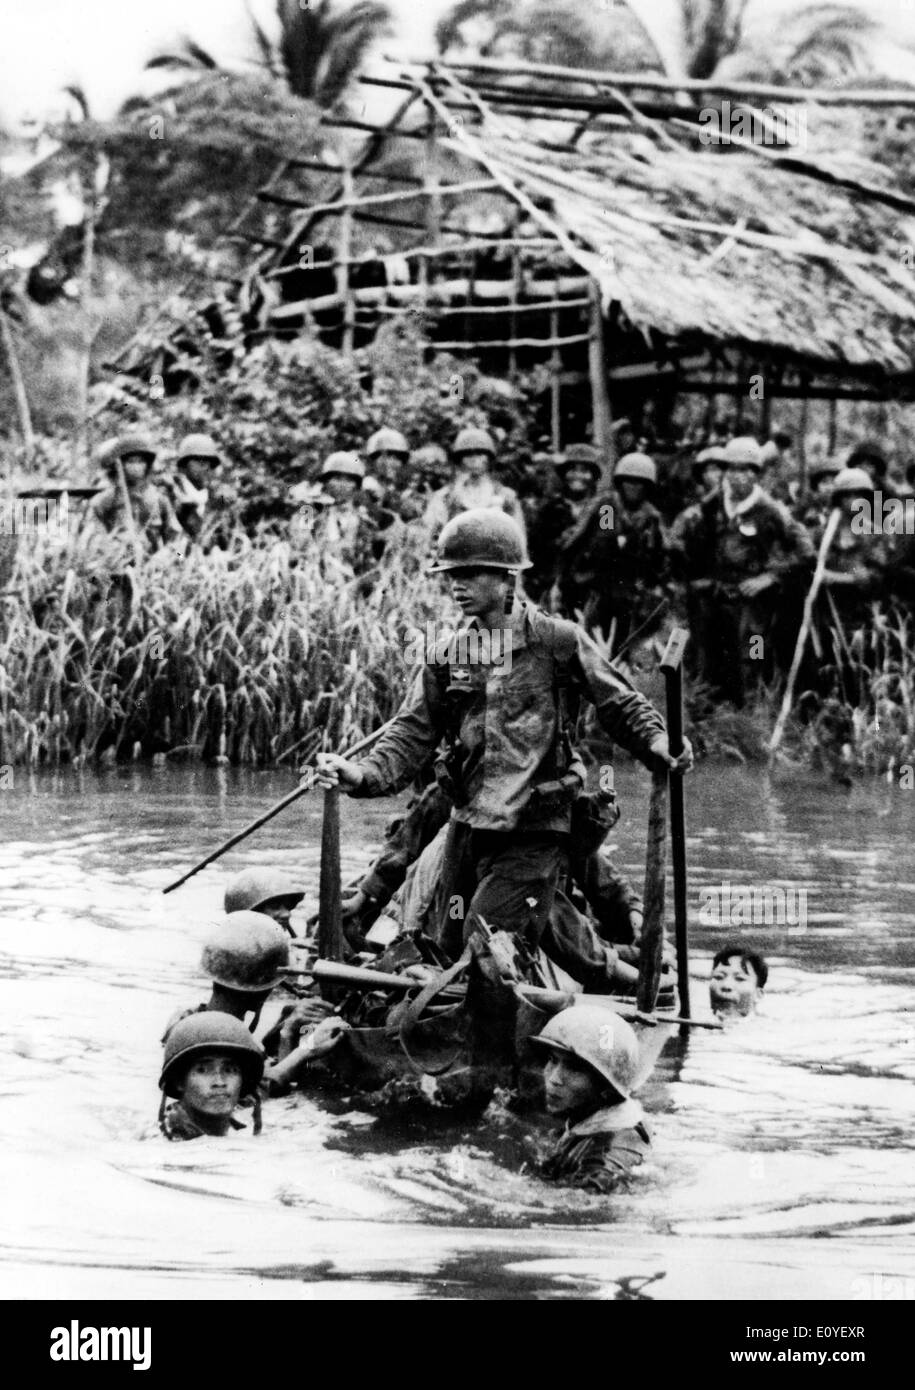 1. Januar 1970 - Ba Xuyen, Vietnam - vietnamesische Truppen Ford einen Kanal durch ein Dorf in Ba Xuyen ausgeführt, arbeiten täglich an Operationen vernichtende Viet Cong Guerilla in der Provinz Ba Xuyen angestrebt. In den 1950er Jahren die USA begannen, Truppen nach Vietnam, in den folgenden 25 Jahren schicken, der darauf folgenden Krieg würde einige der stärksten Spannungen in der US-Geschichte zu schaffen. Fast 3 Millionen US-Männer und Frauen wurden geschickt, um zu kämpfen für das, was eine fragwürdige Sache war. Insgesamt wird geschätzt, dass mehr als 2,5 Millionen Menschen auf beiden Seiten getötet wurden. Stockfoto